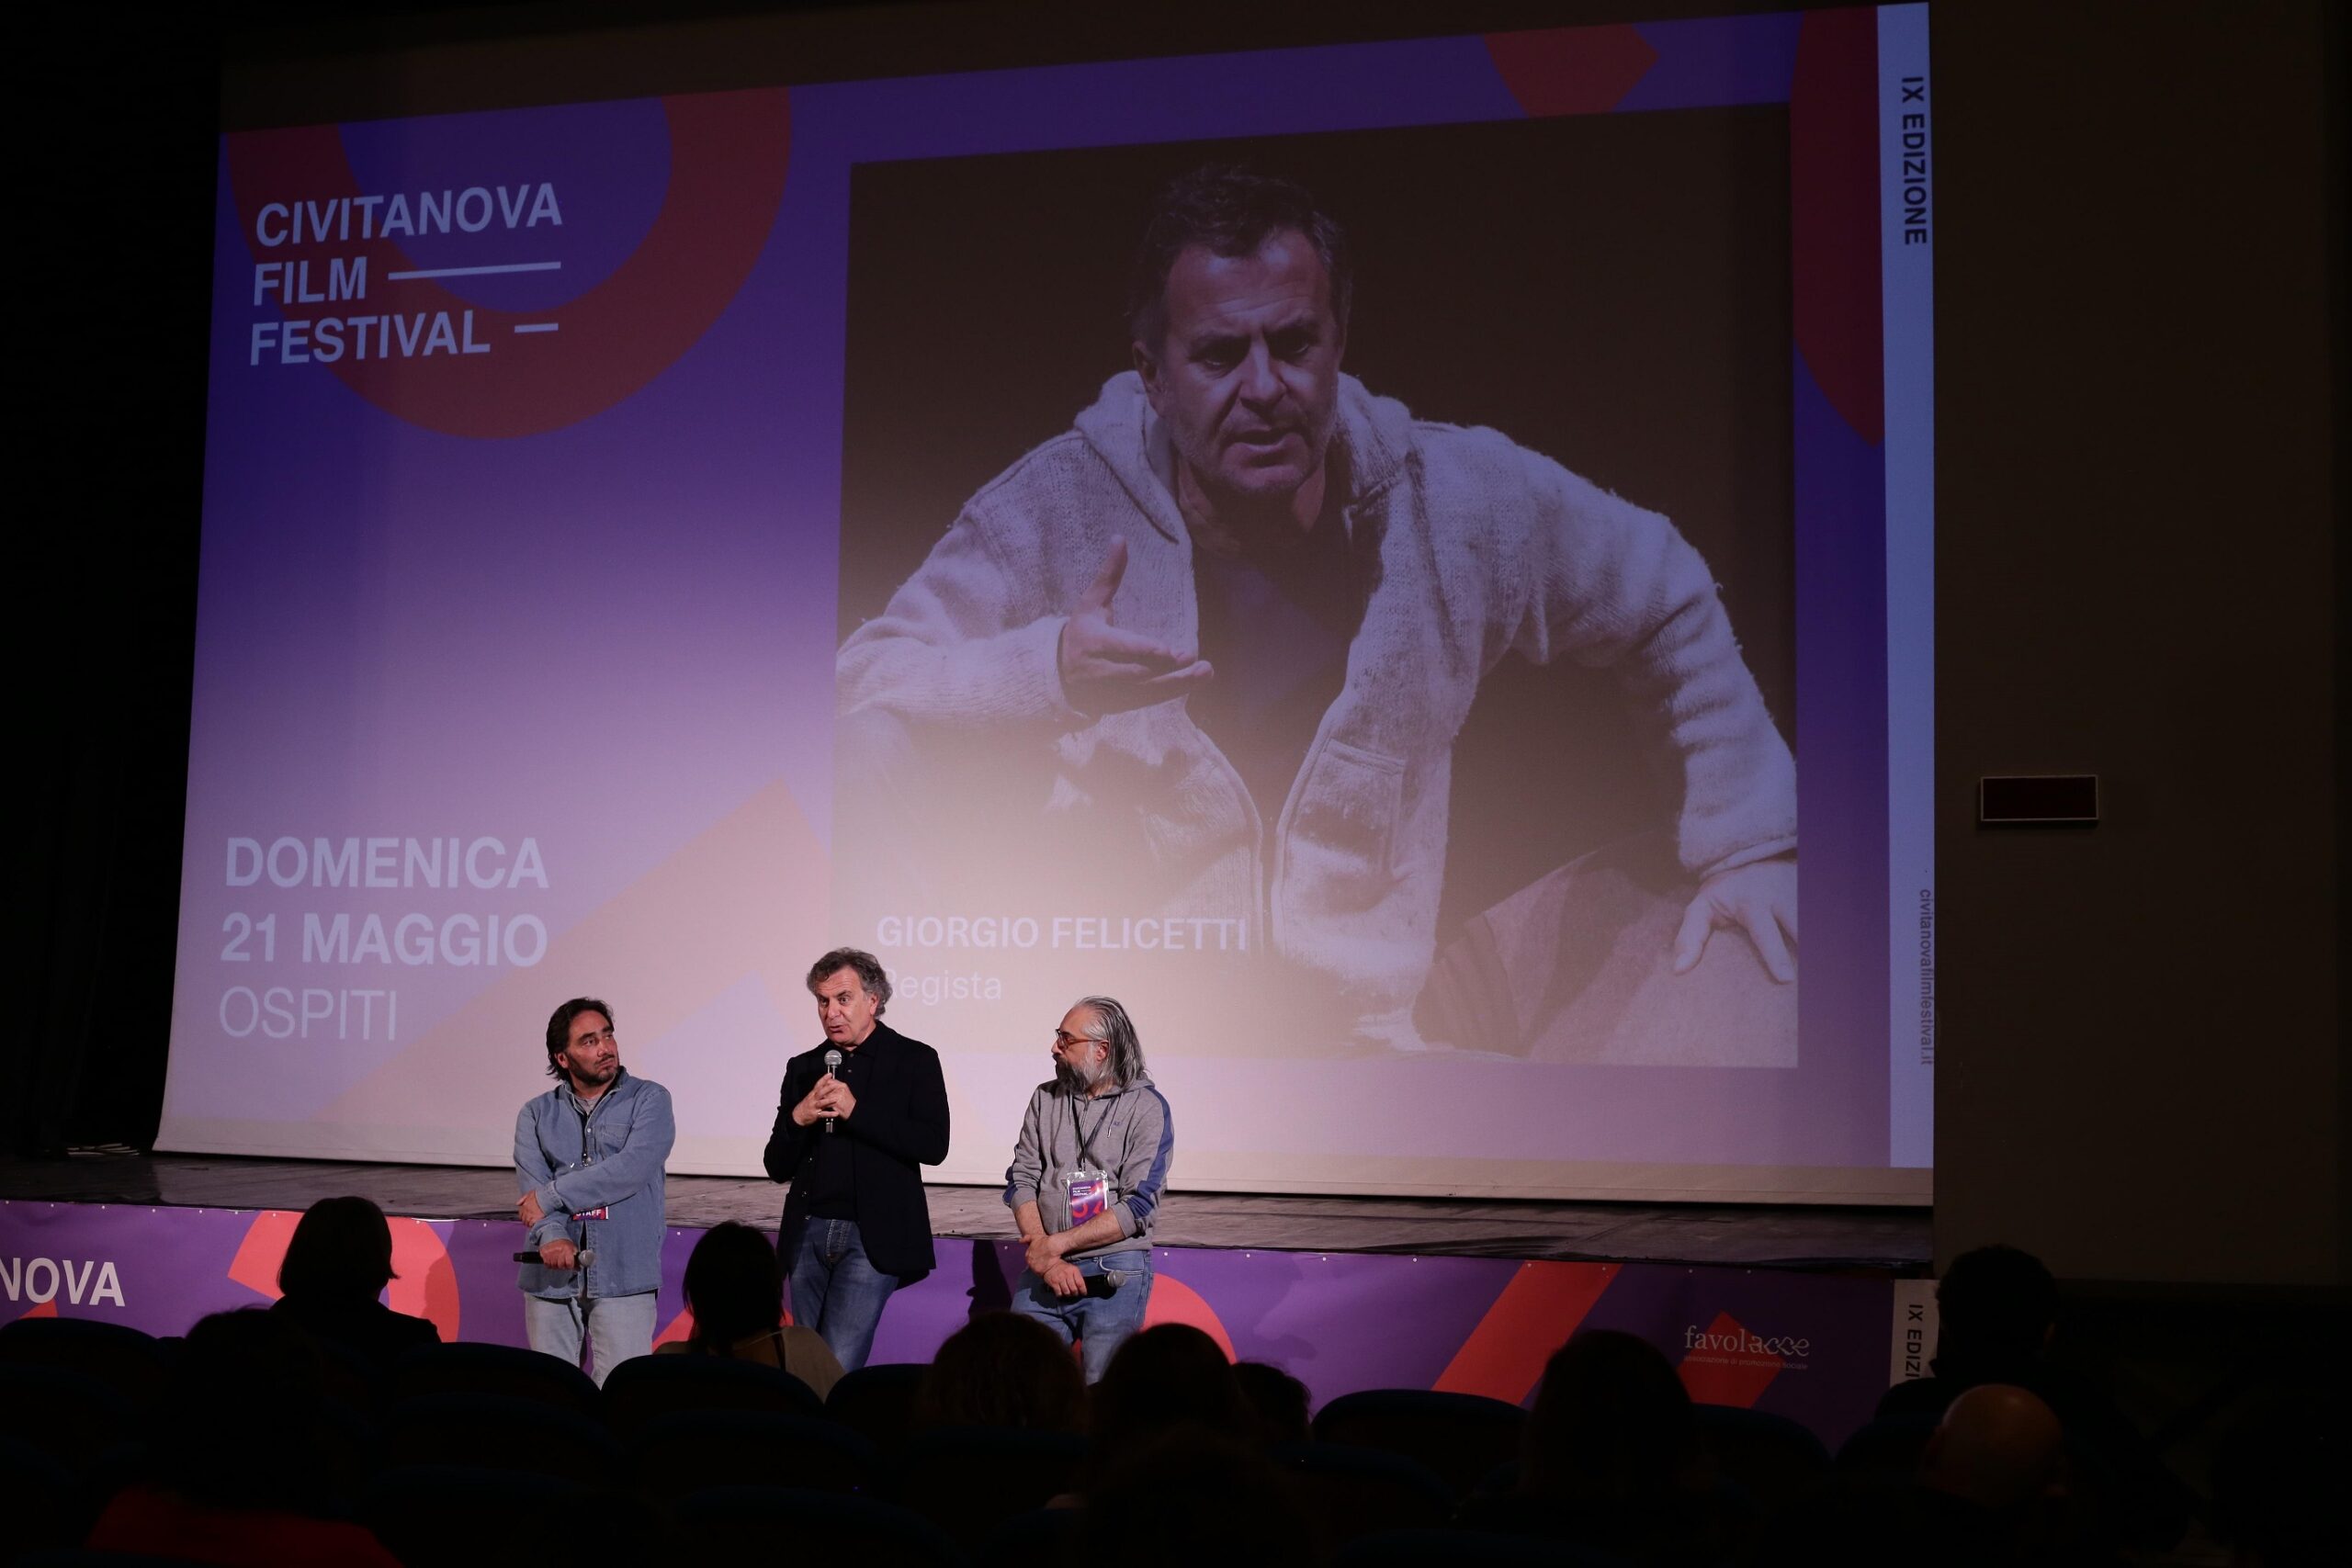 Civitanova Film Festival, conclusa la prima parte